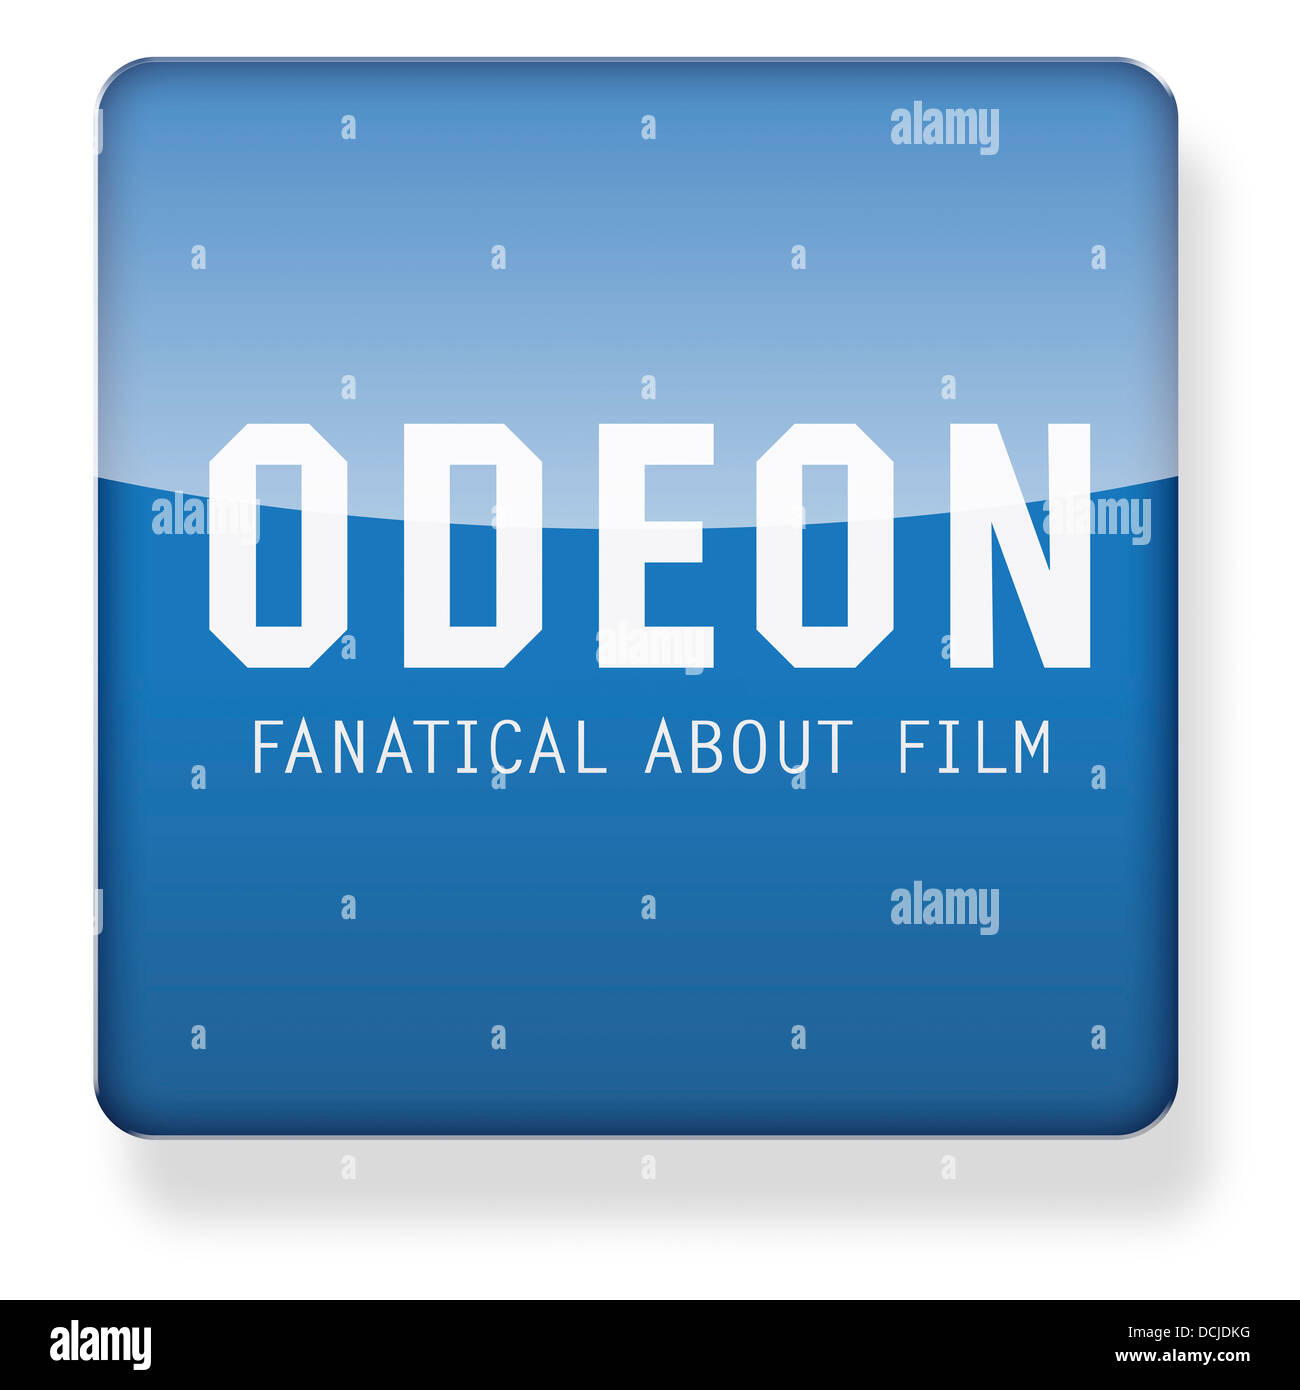 Cine Odeon logotipo como el icono de una aplicación. Trazado de recorte incluido. Foto de stock